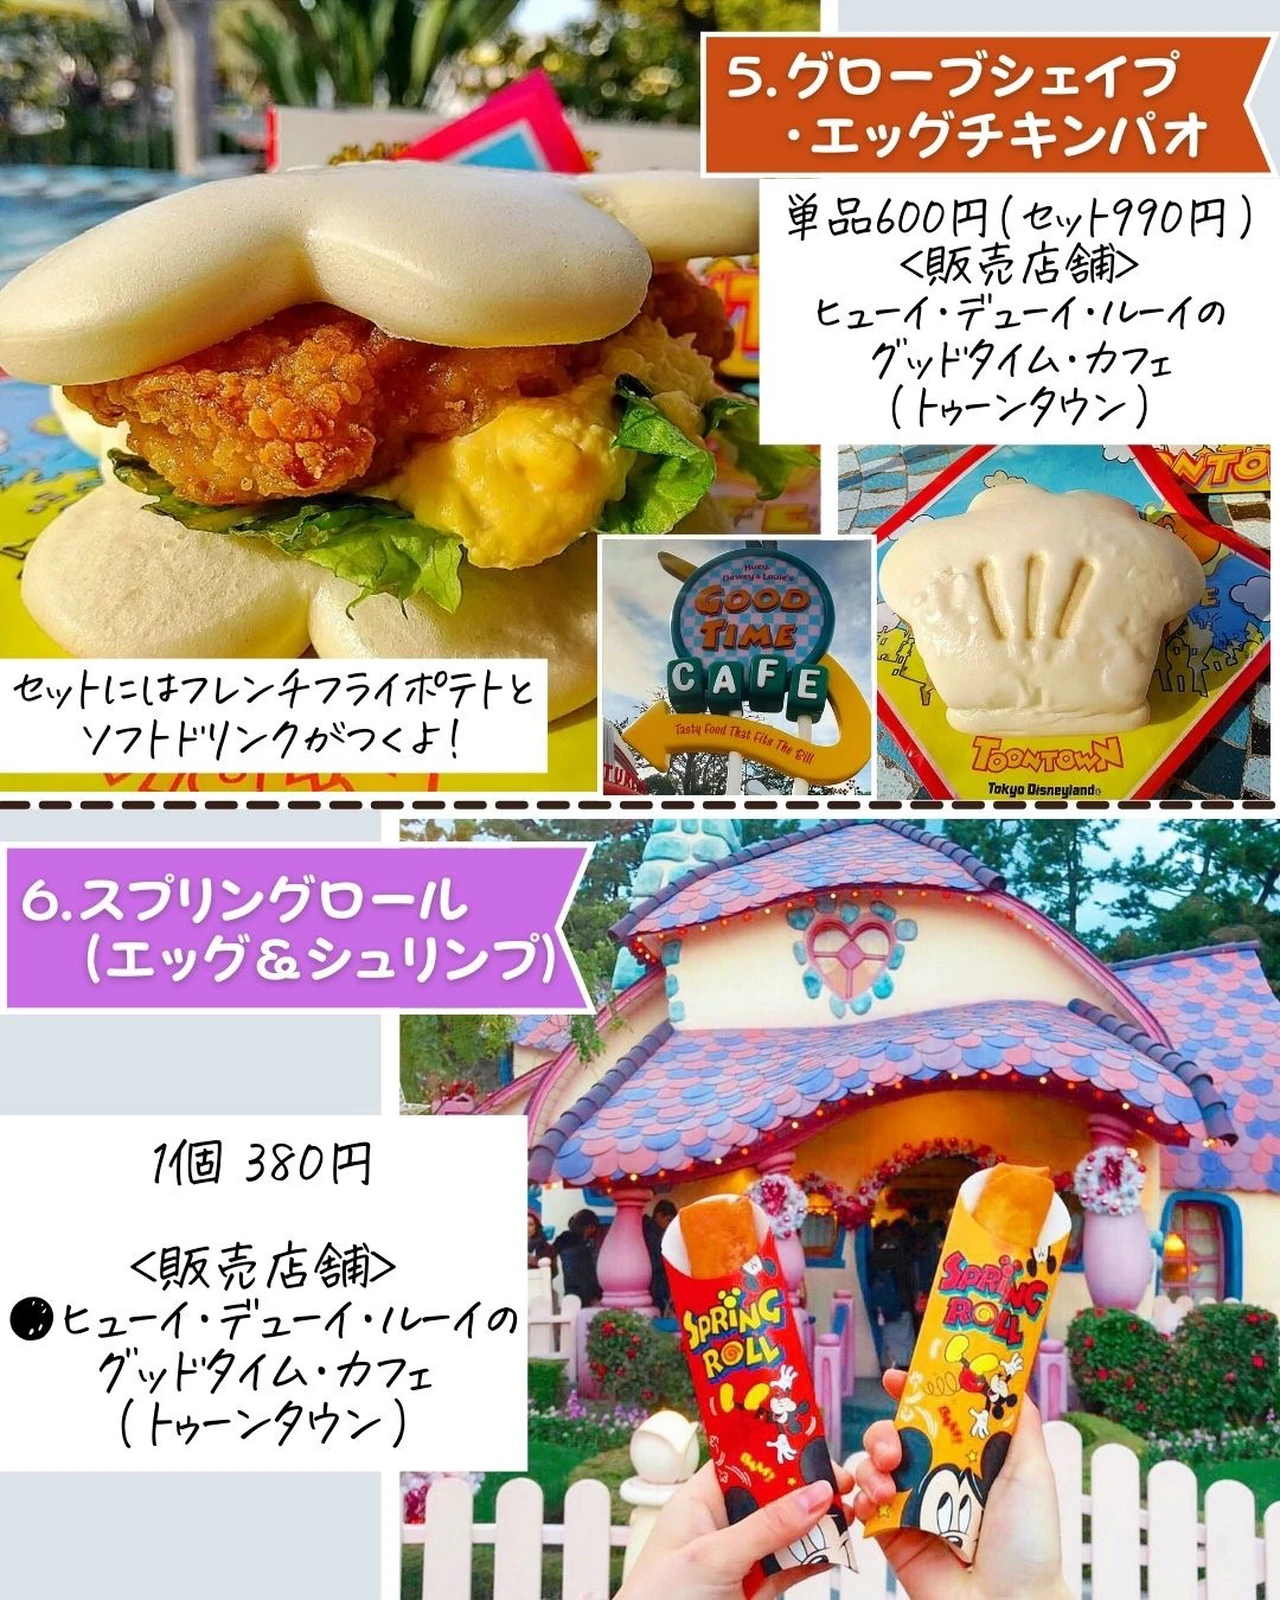 東京ディズニーランド食べ歩きグルメtop10選 ショーマン 国内の映え旅が投稿したフォトブック Lemon8